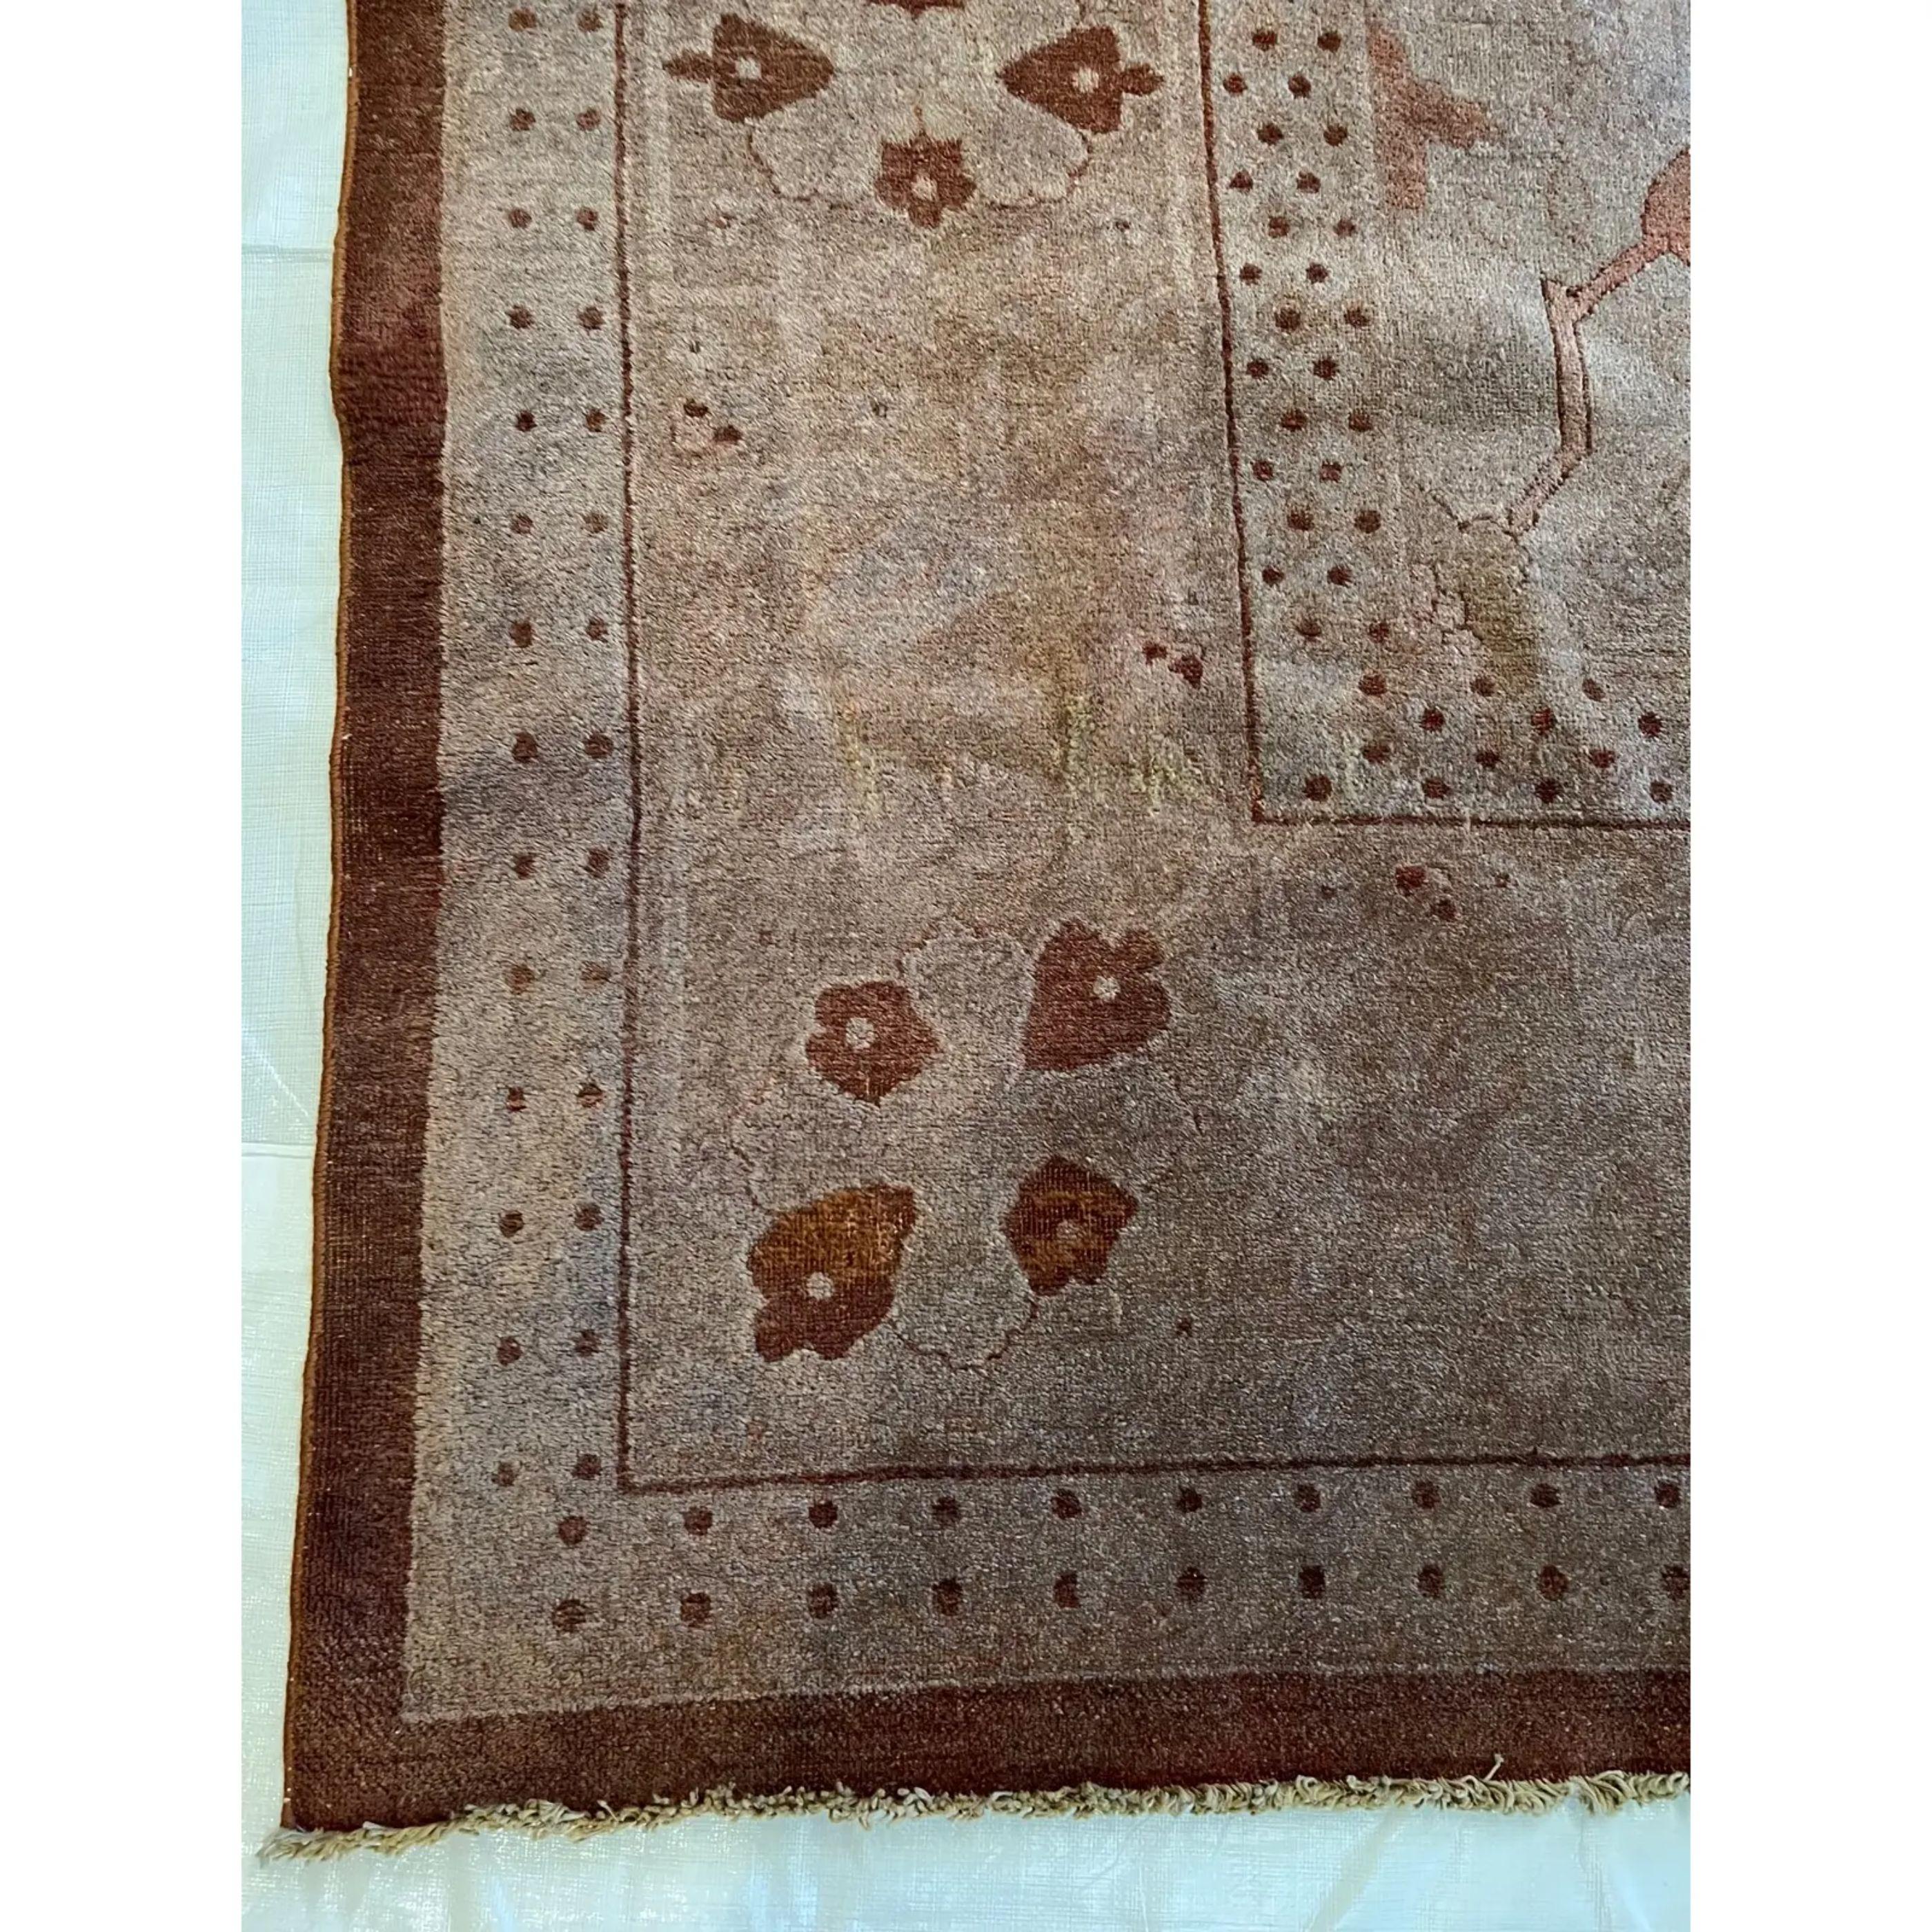 Traditionnellement, les tapis indiens font partie des tapis les plus recherchés par les collectionneurs et les décorateurs d'intérieur. L'Inde est connue pour sa production de textiles indiens raffinés, de tapis de la taille d'un palais, de